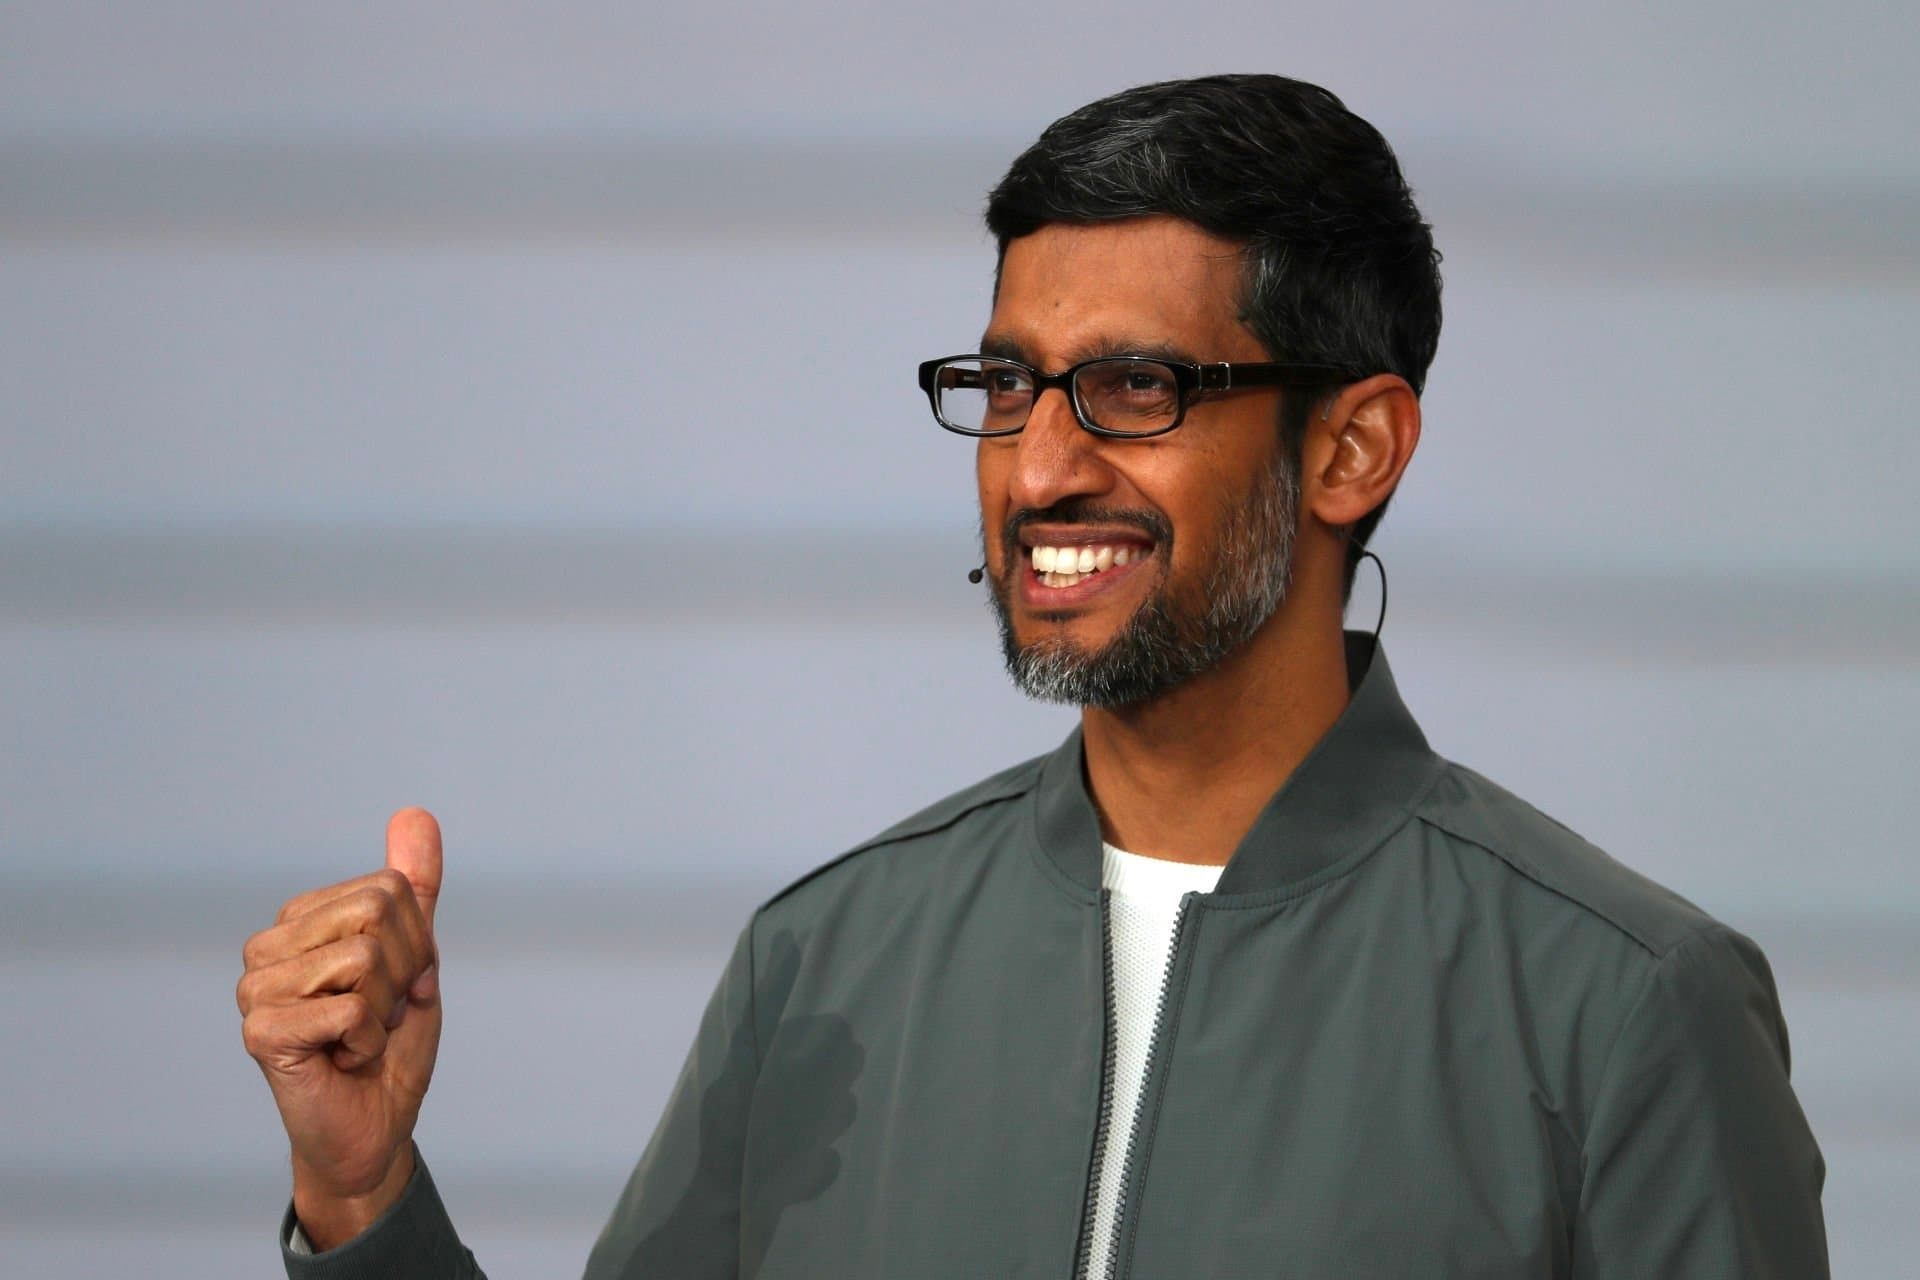 سوندار پیچای / Sundar Pichai مدیرعامل گوگل با مشت گره کرده و چهره خندان